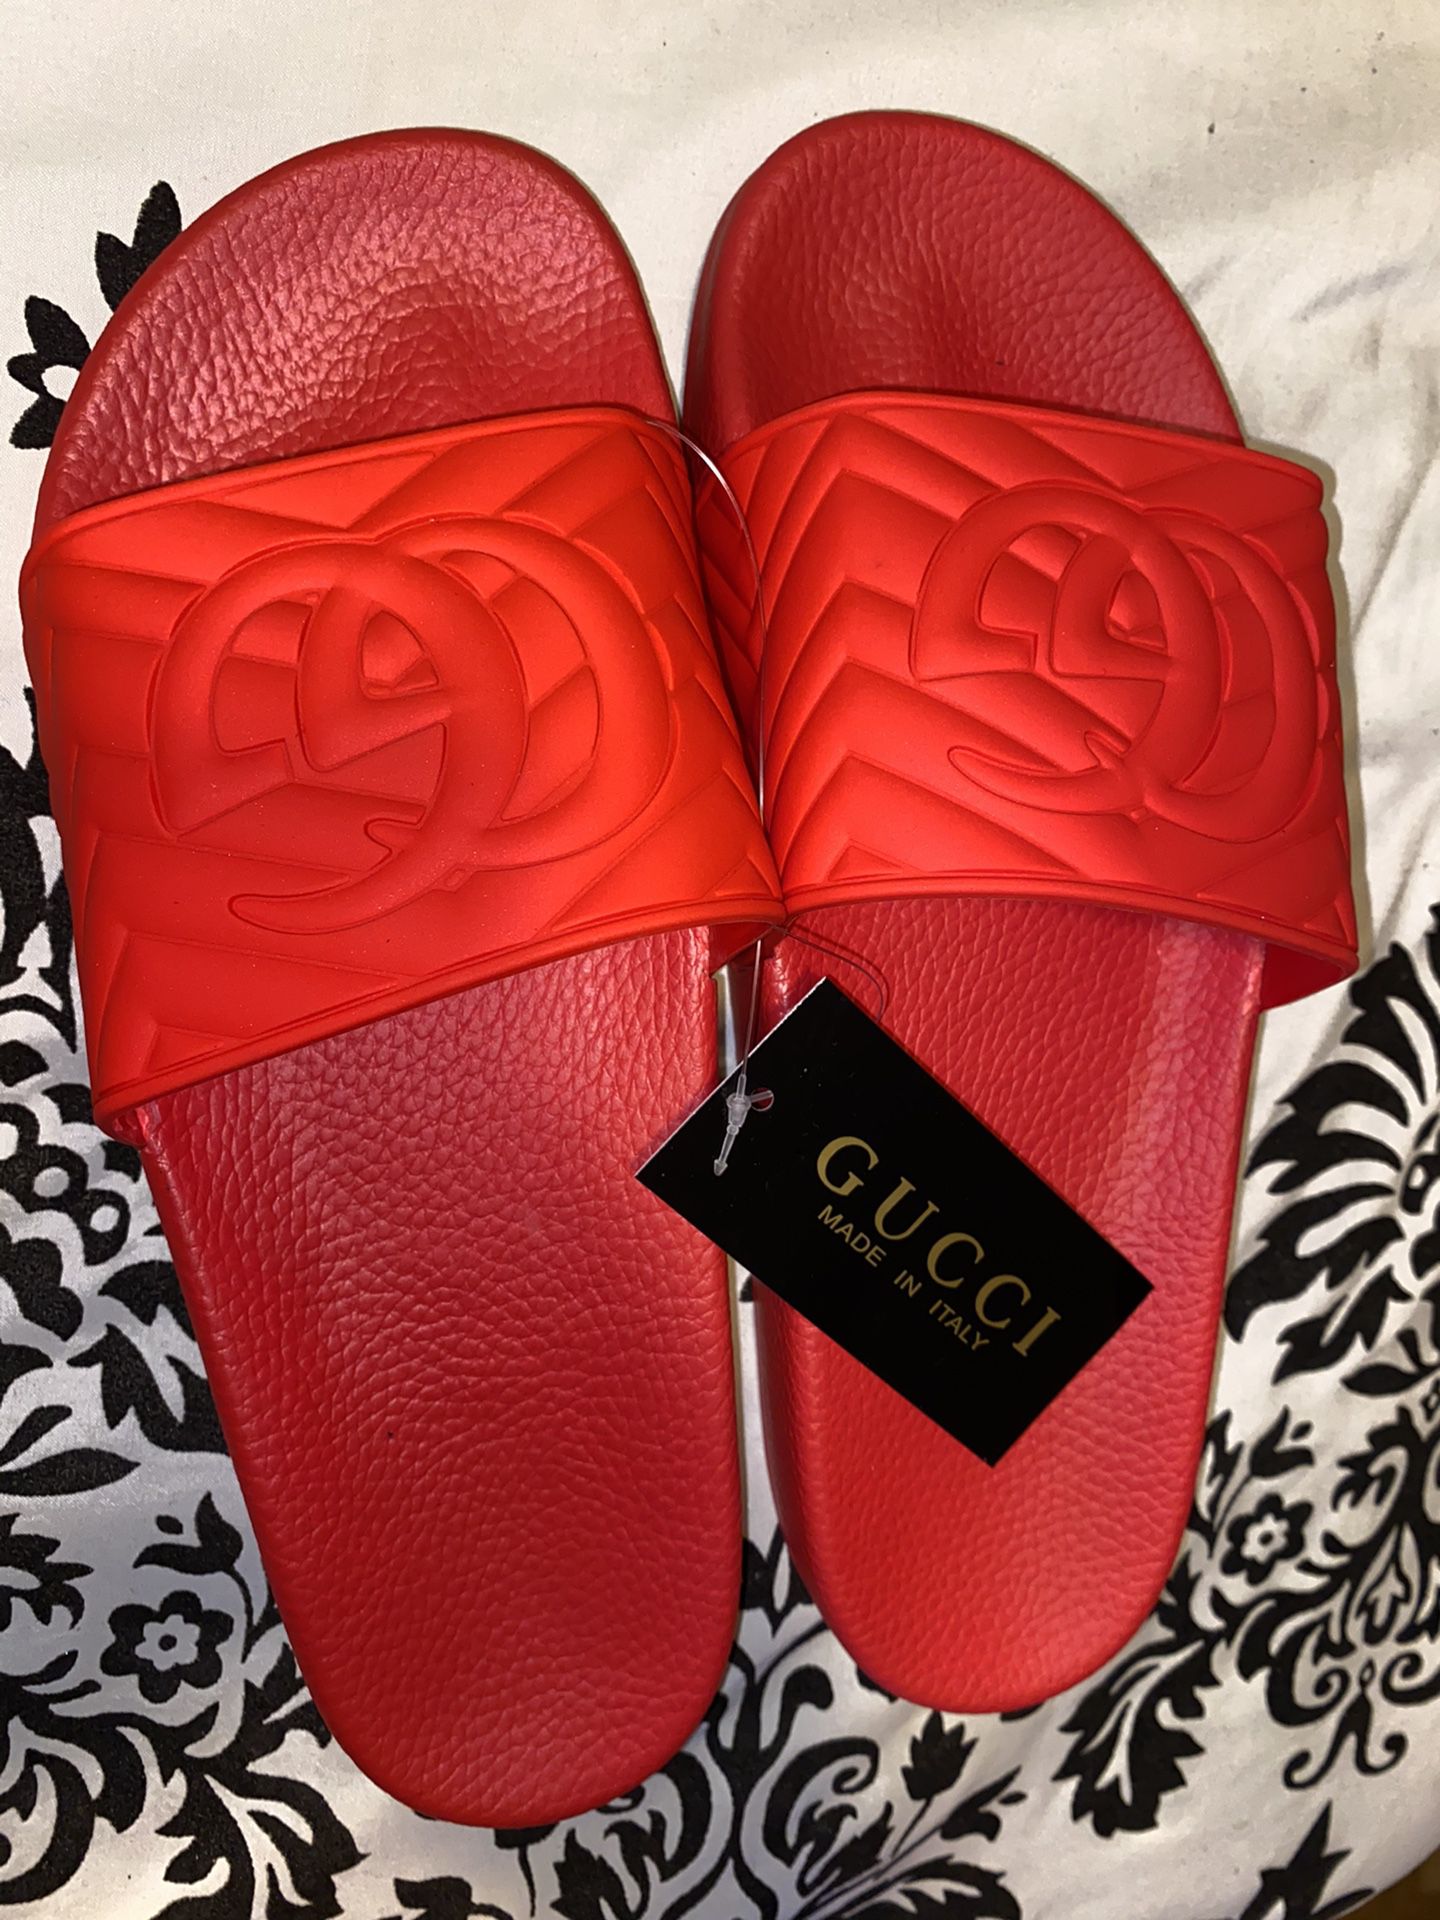 Gucci slides for men